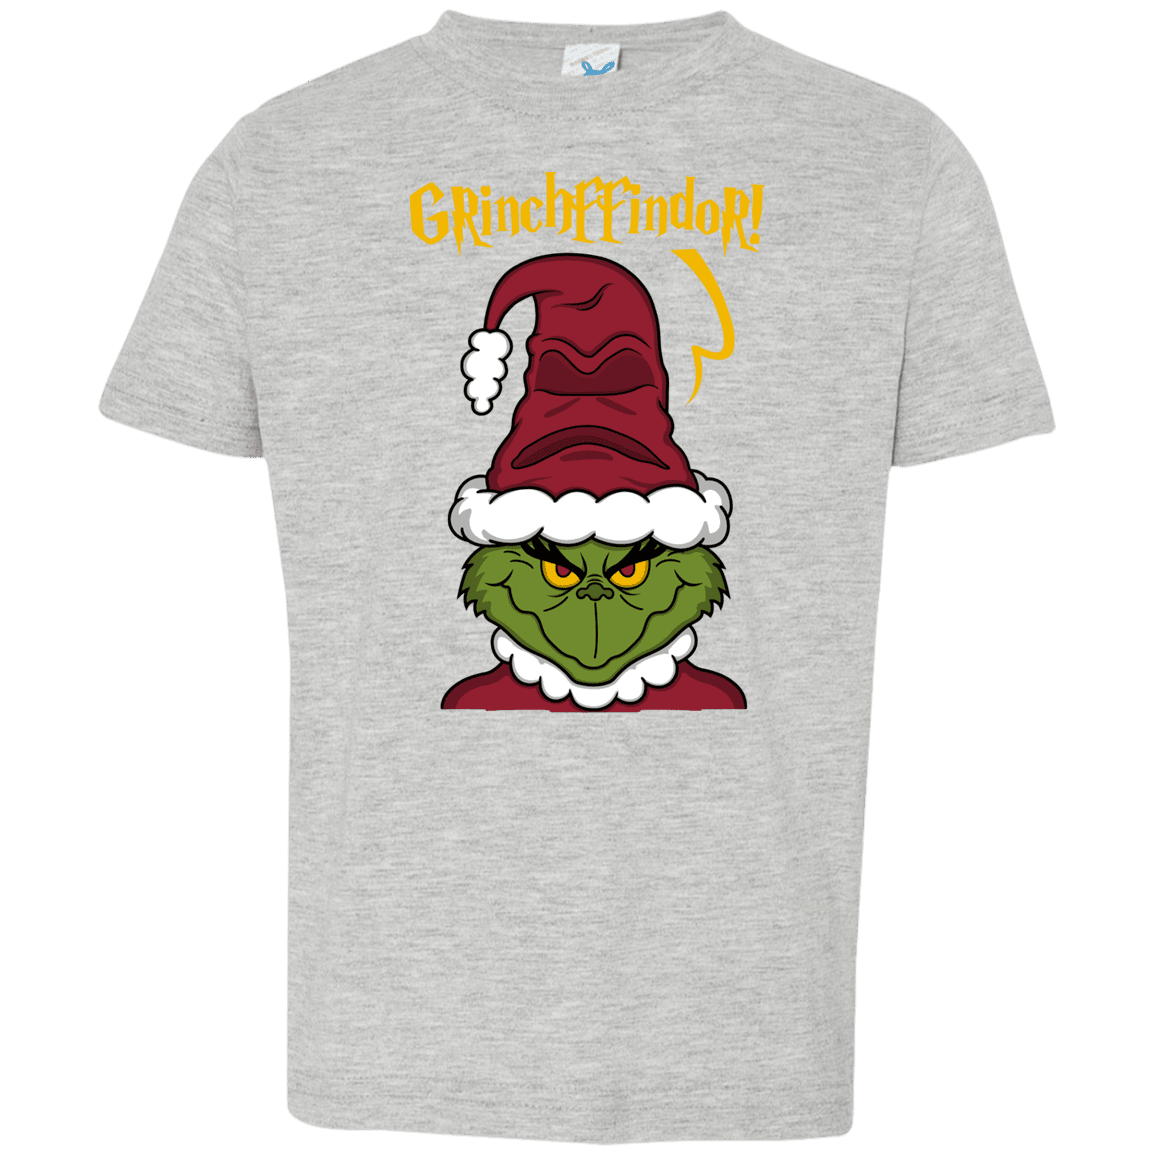 T-Shirts Heather Grey / 2T Grinchffindor Toddler Premium T-Shirt